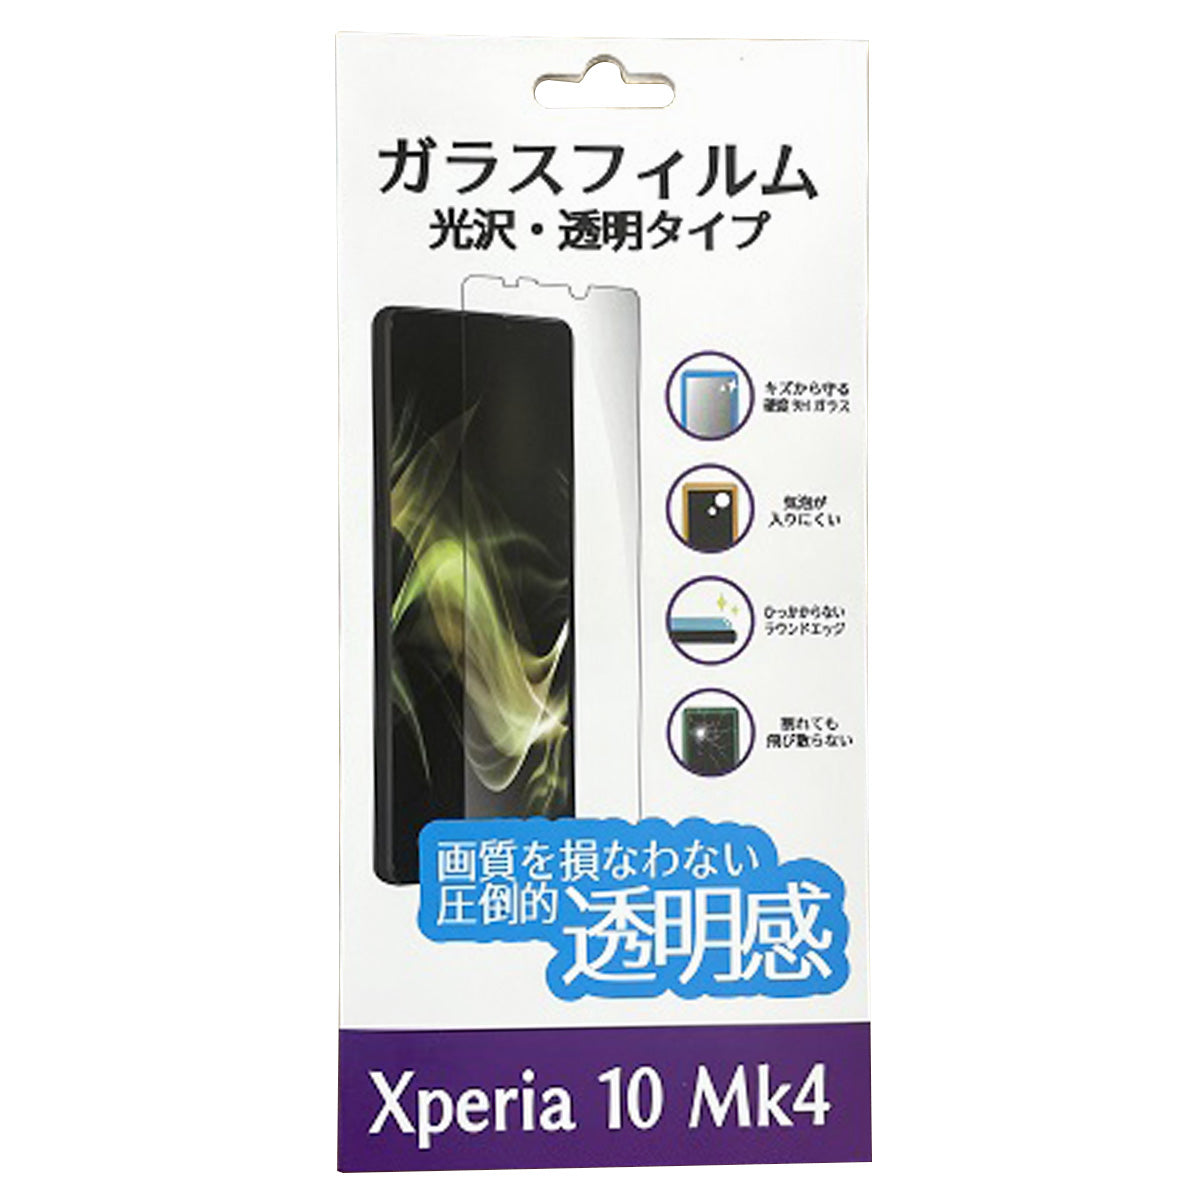 【在庫限り】Xperia10Mk4ガラスフィルム 346978